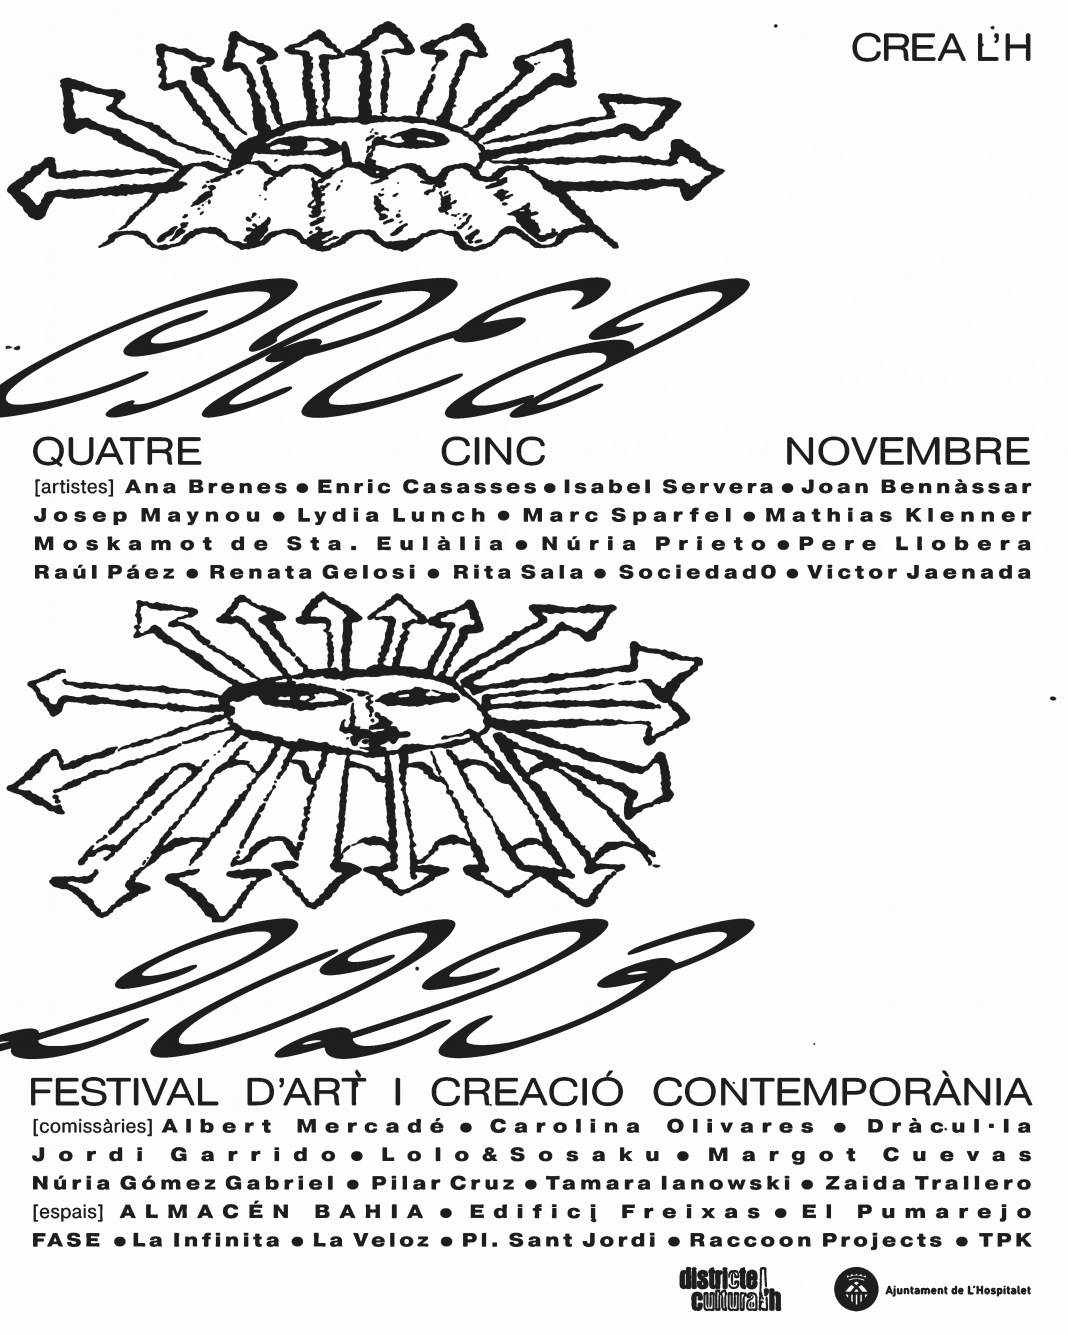 Festival CREA L’H 23, Festival d’art i creació contemporàniahttps://www.exibart.es/repository/media/formidable/11/img/4ae/Post1_noms-artistes-curad-i-espais-1068x1335.png